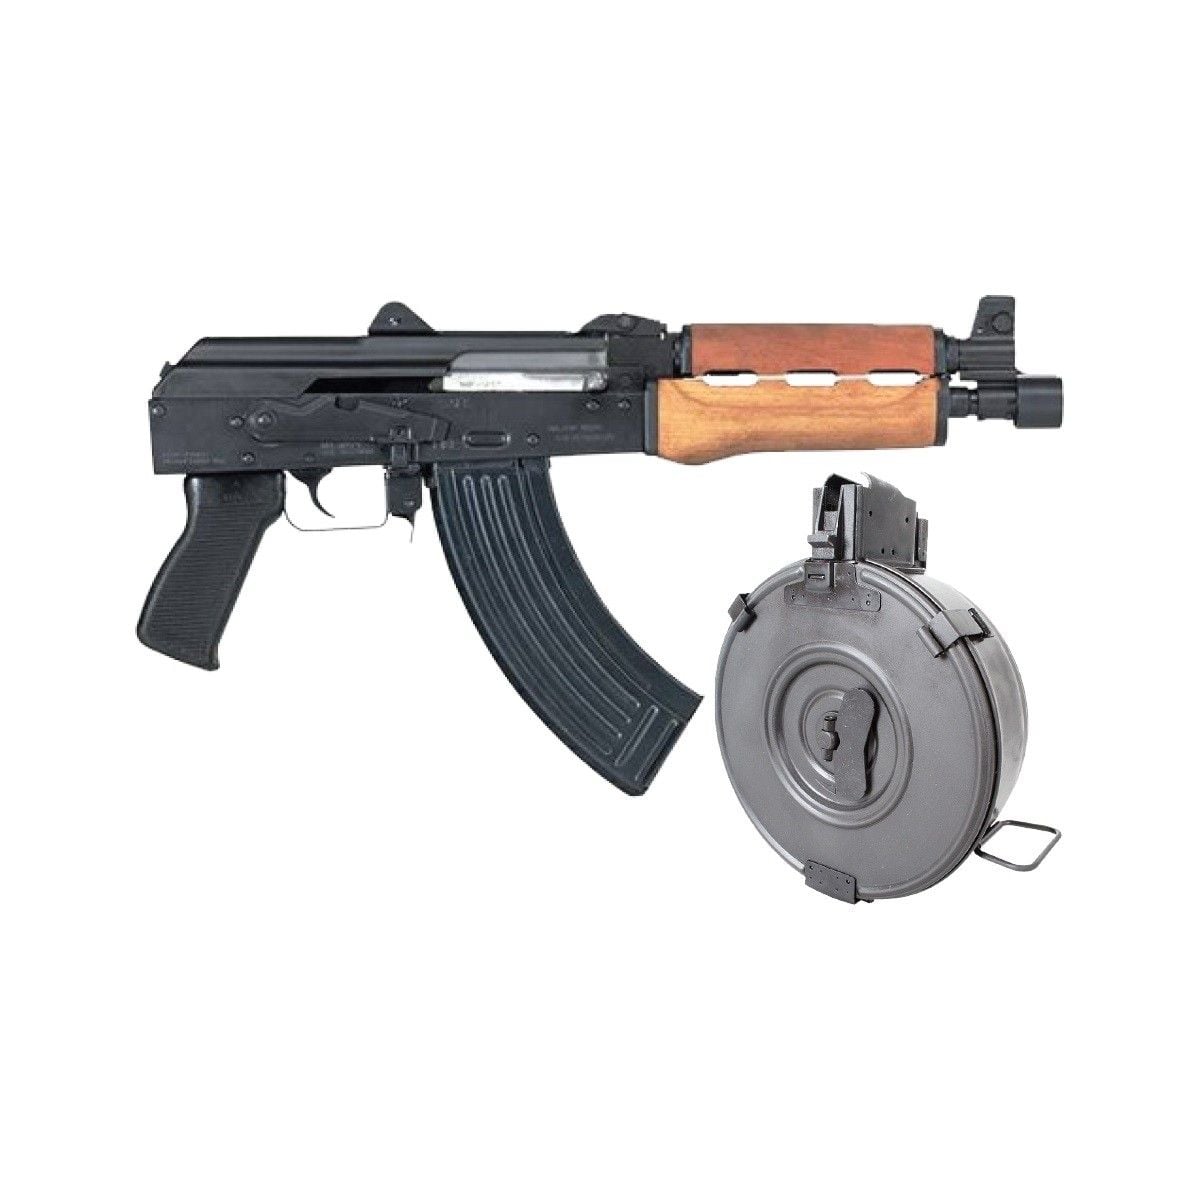 AK pistol with drum magazine.